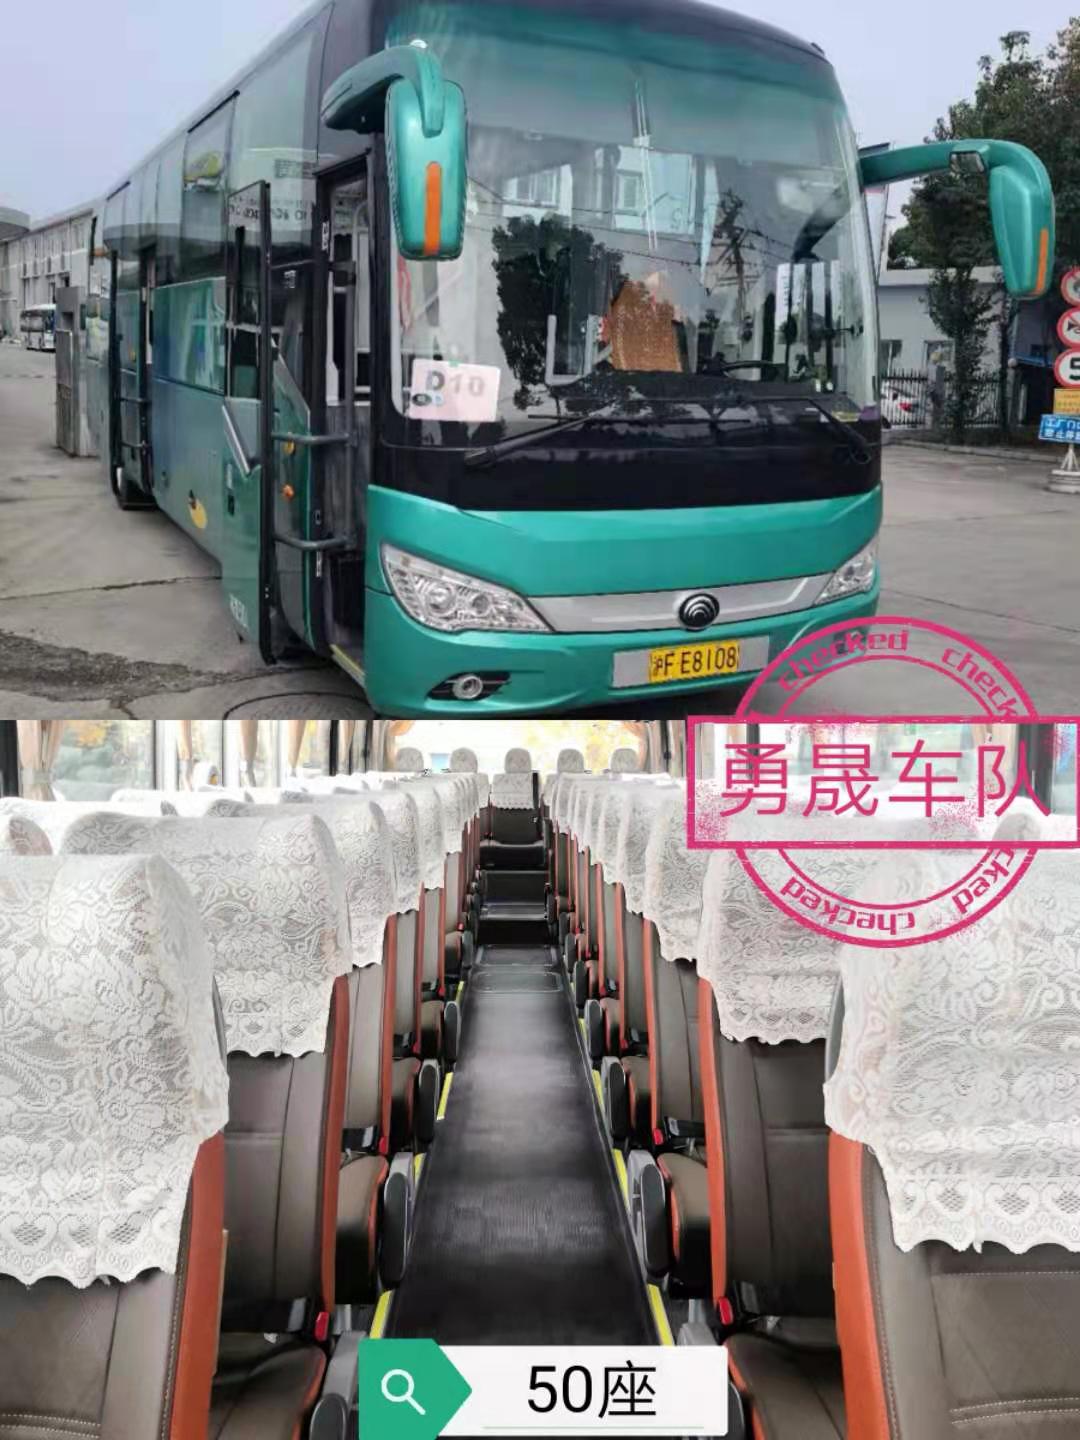 50座旅游大巴-上海大巴班车租赁公司提醒在乘车时切勿乱扔垃圾